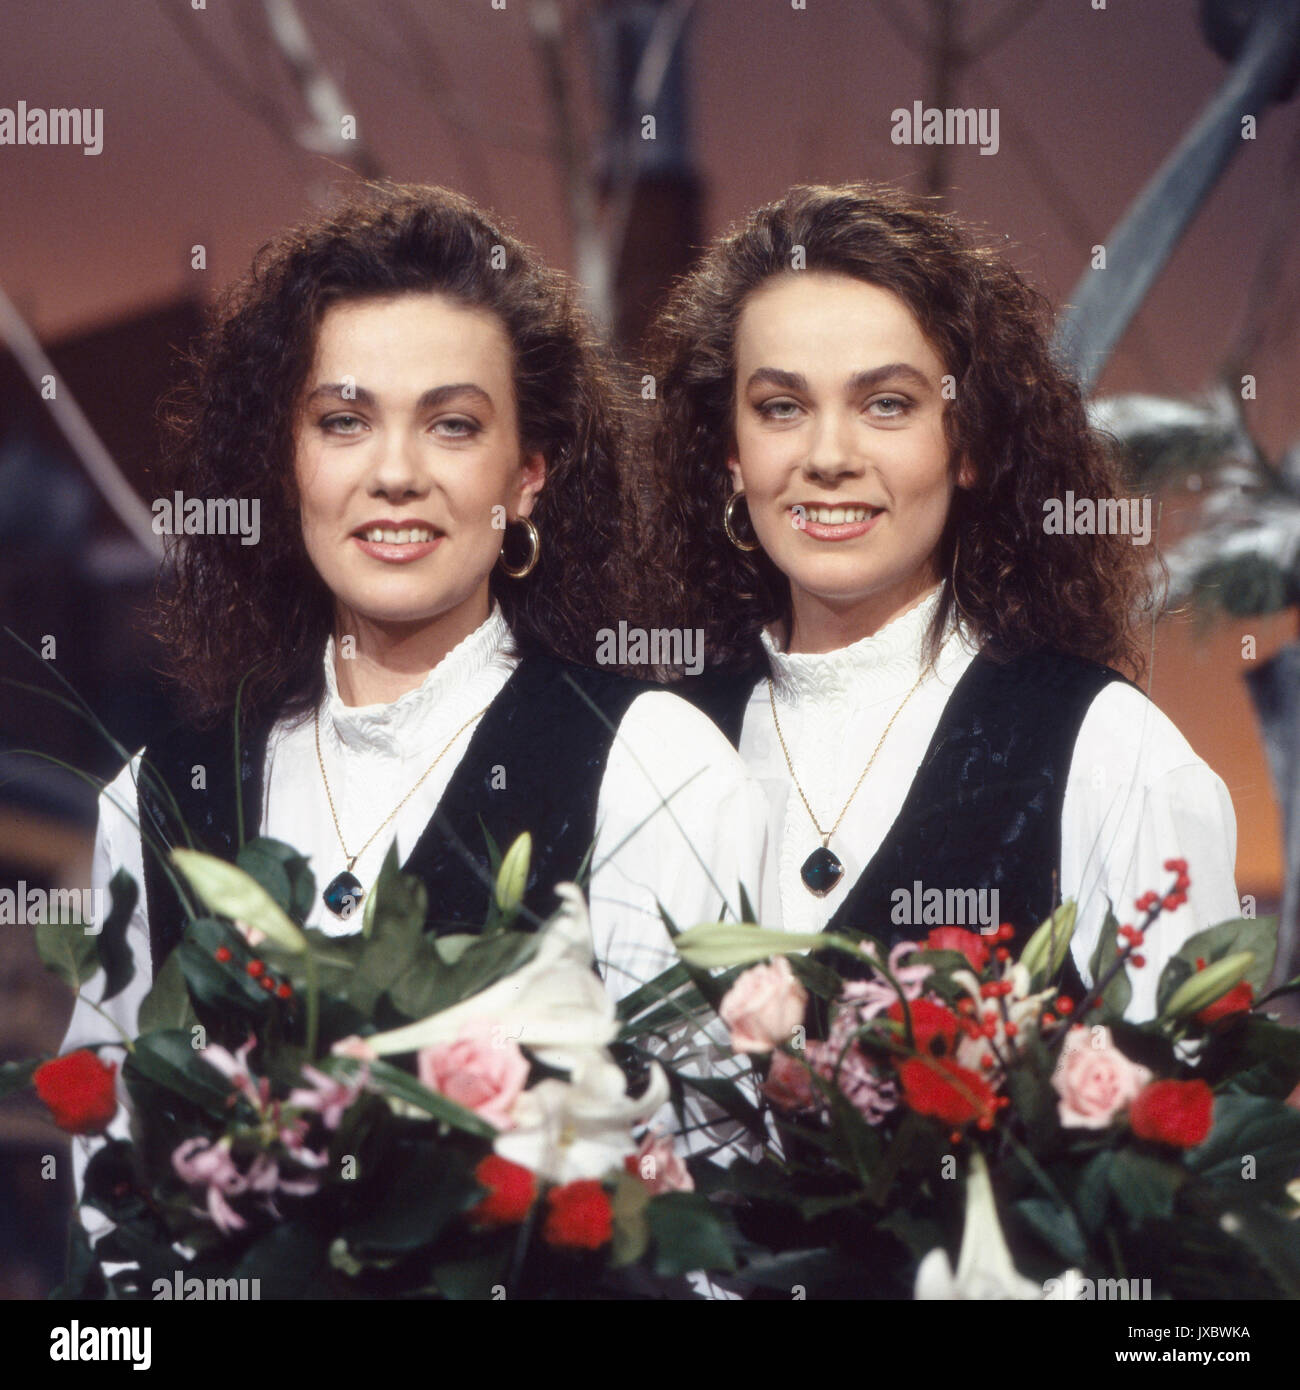 Das Volksmusikduo 'Prager Dirndl', Deutschland 1990er Jahre. Folklore music duo 'Prager Dirndl', Germany 1990s. Stock Photo